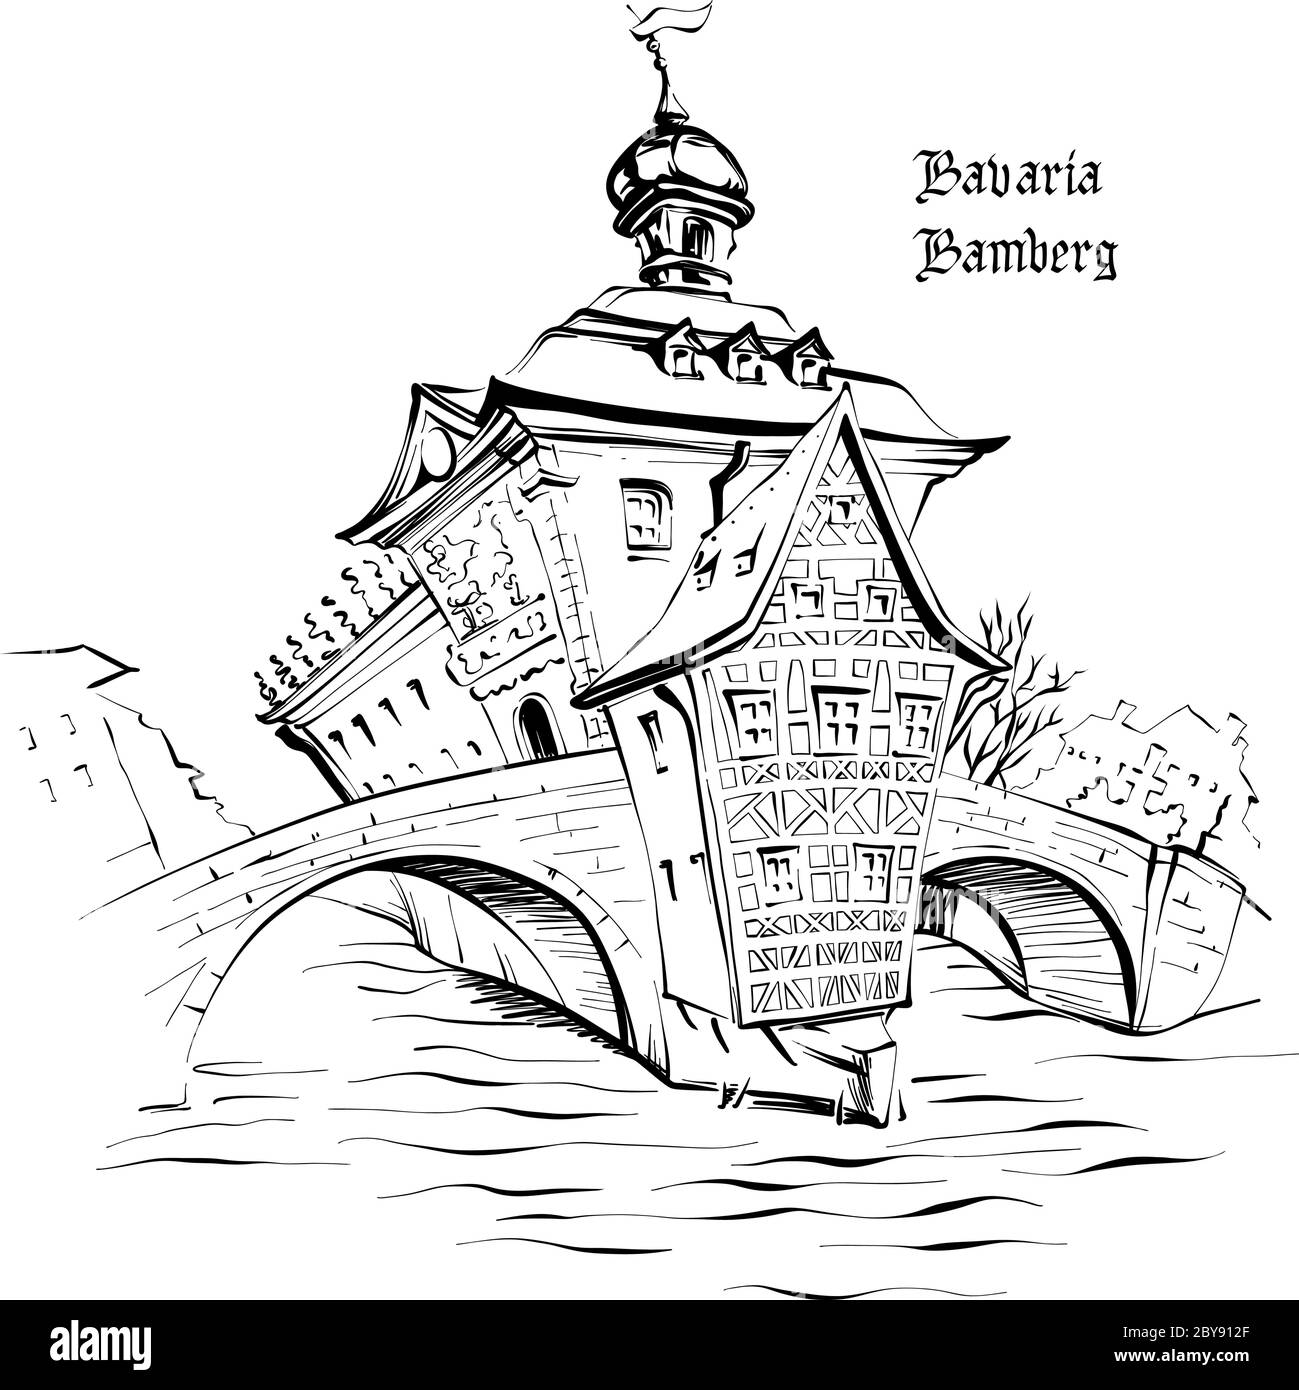 Scénario de voyage de la vieille mairie, Altes Rathaus, à Bamberg, Bavière, Allemagne du Sud Illustration de Vecteur